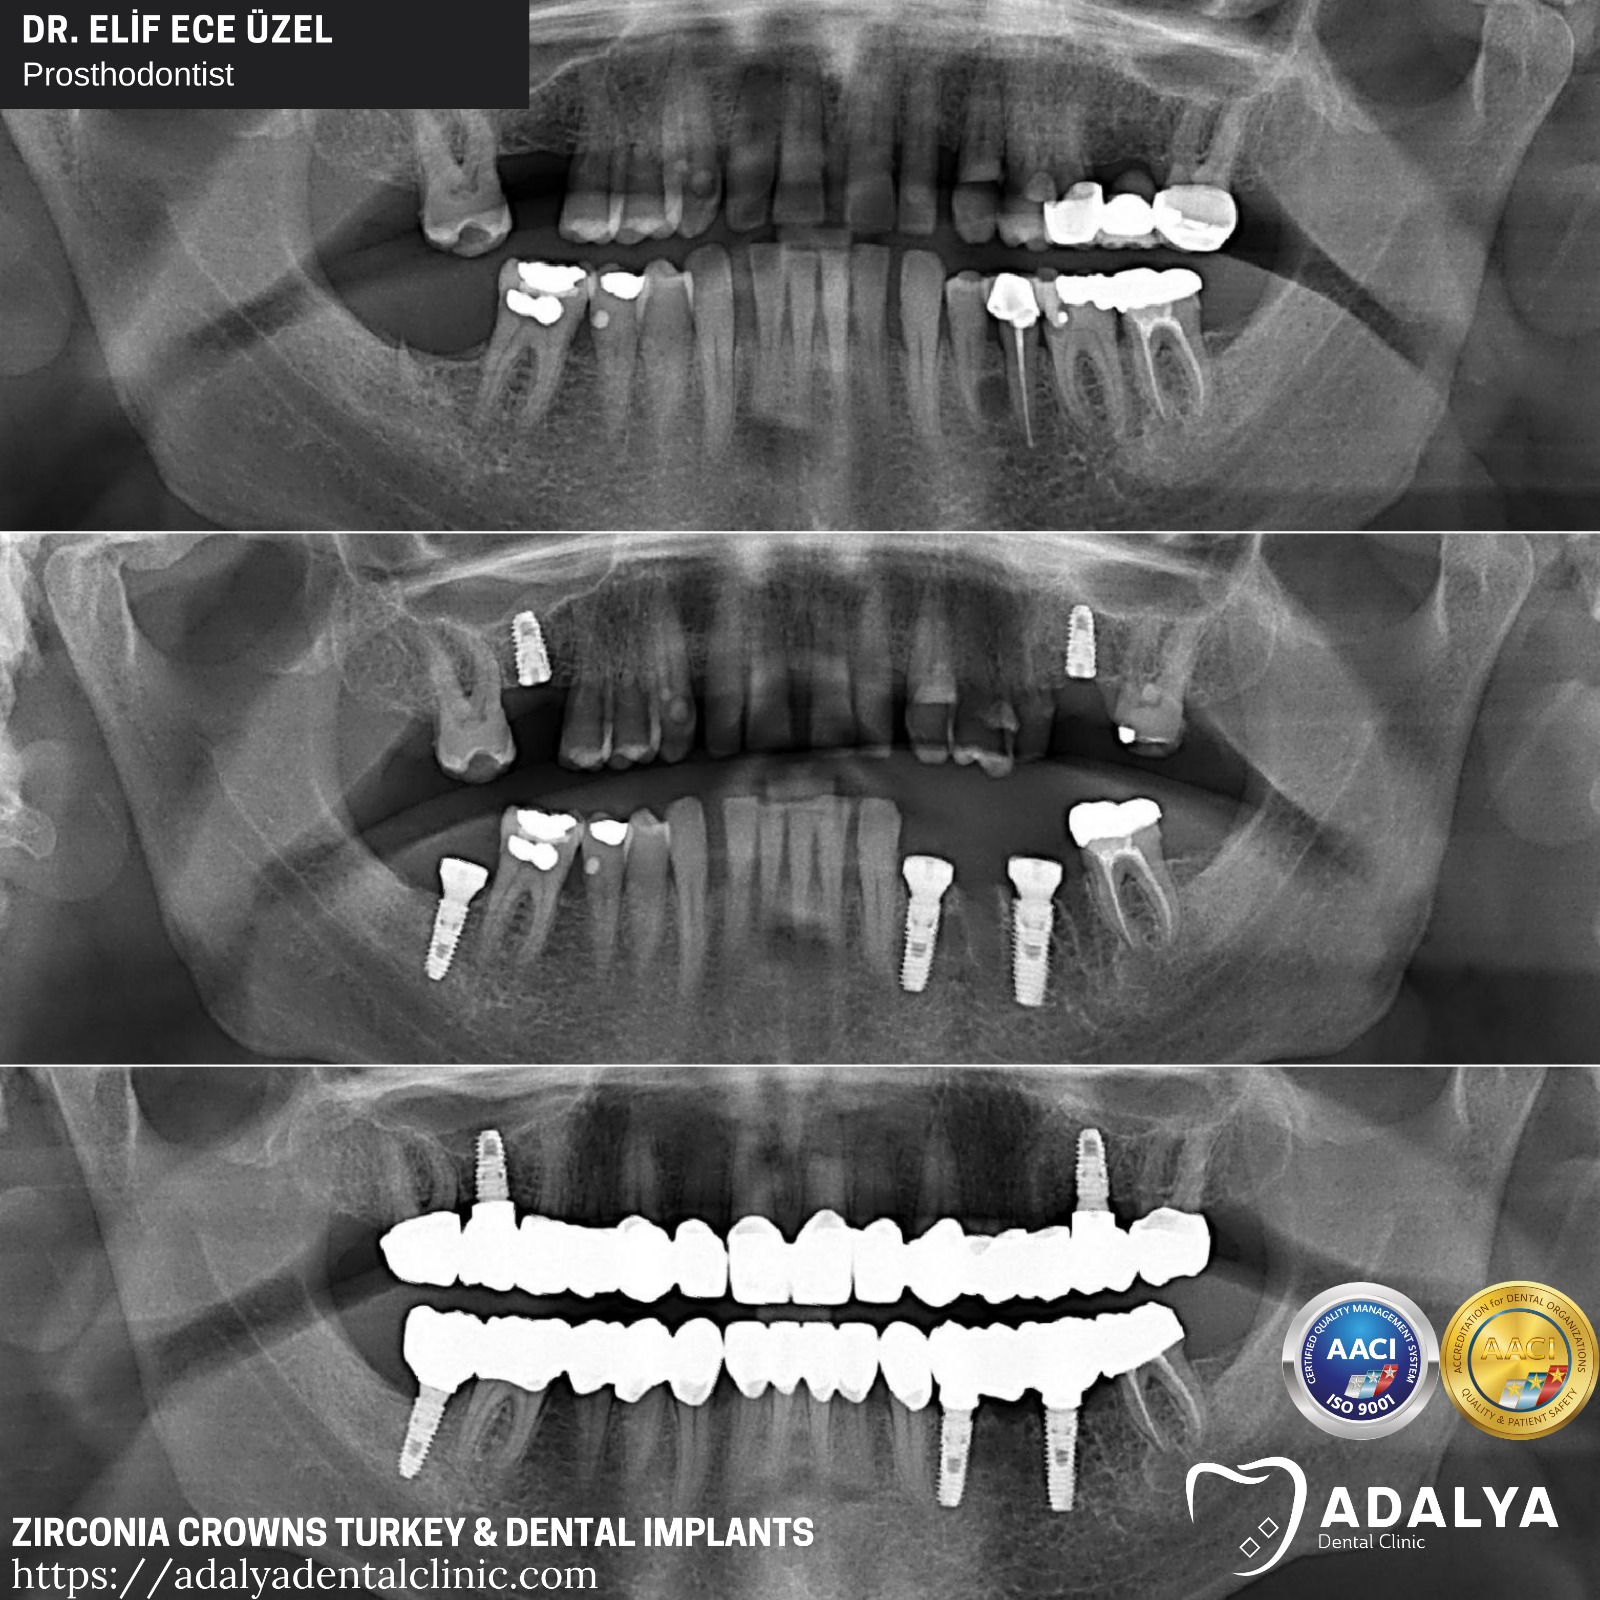 dental implants turkey antalya price cost packages adalya panoramic